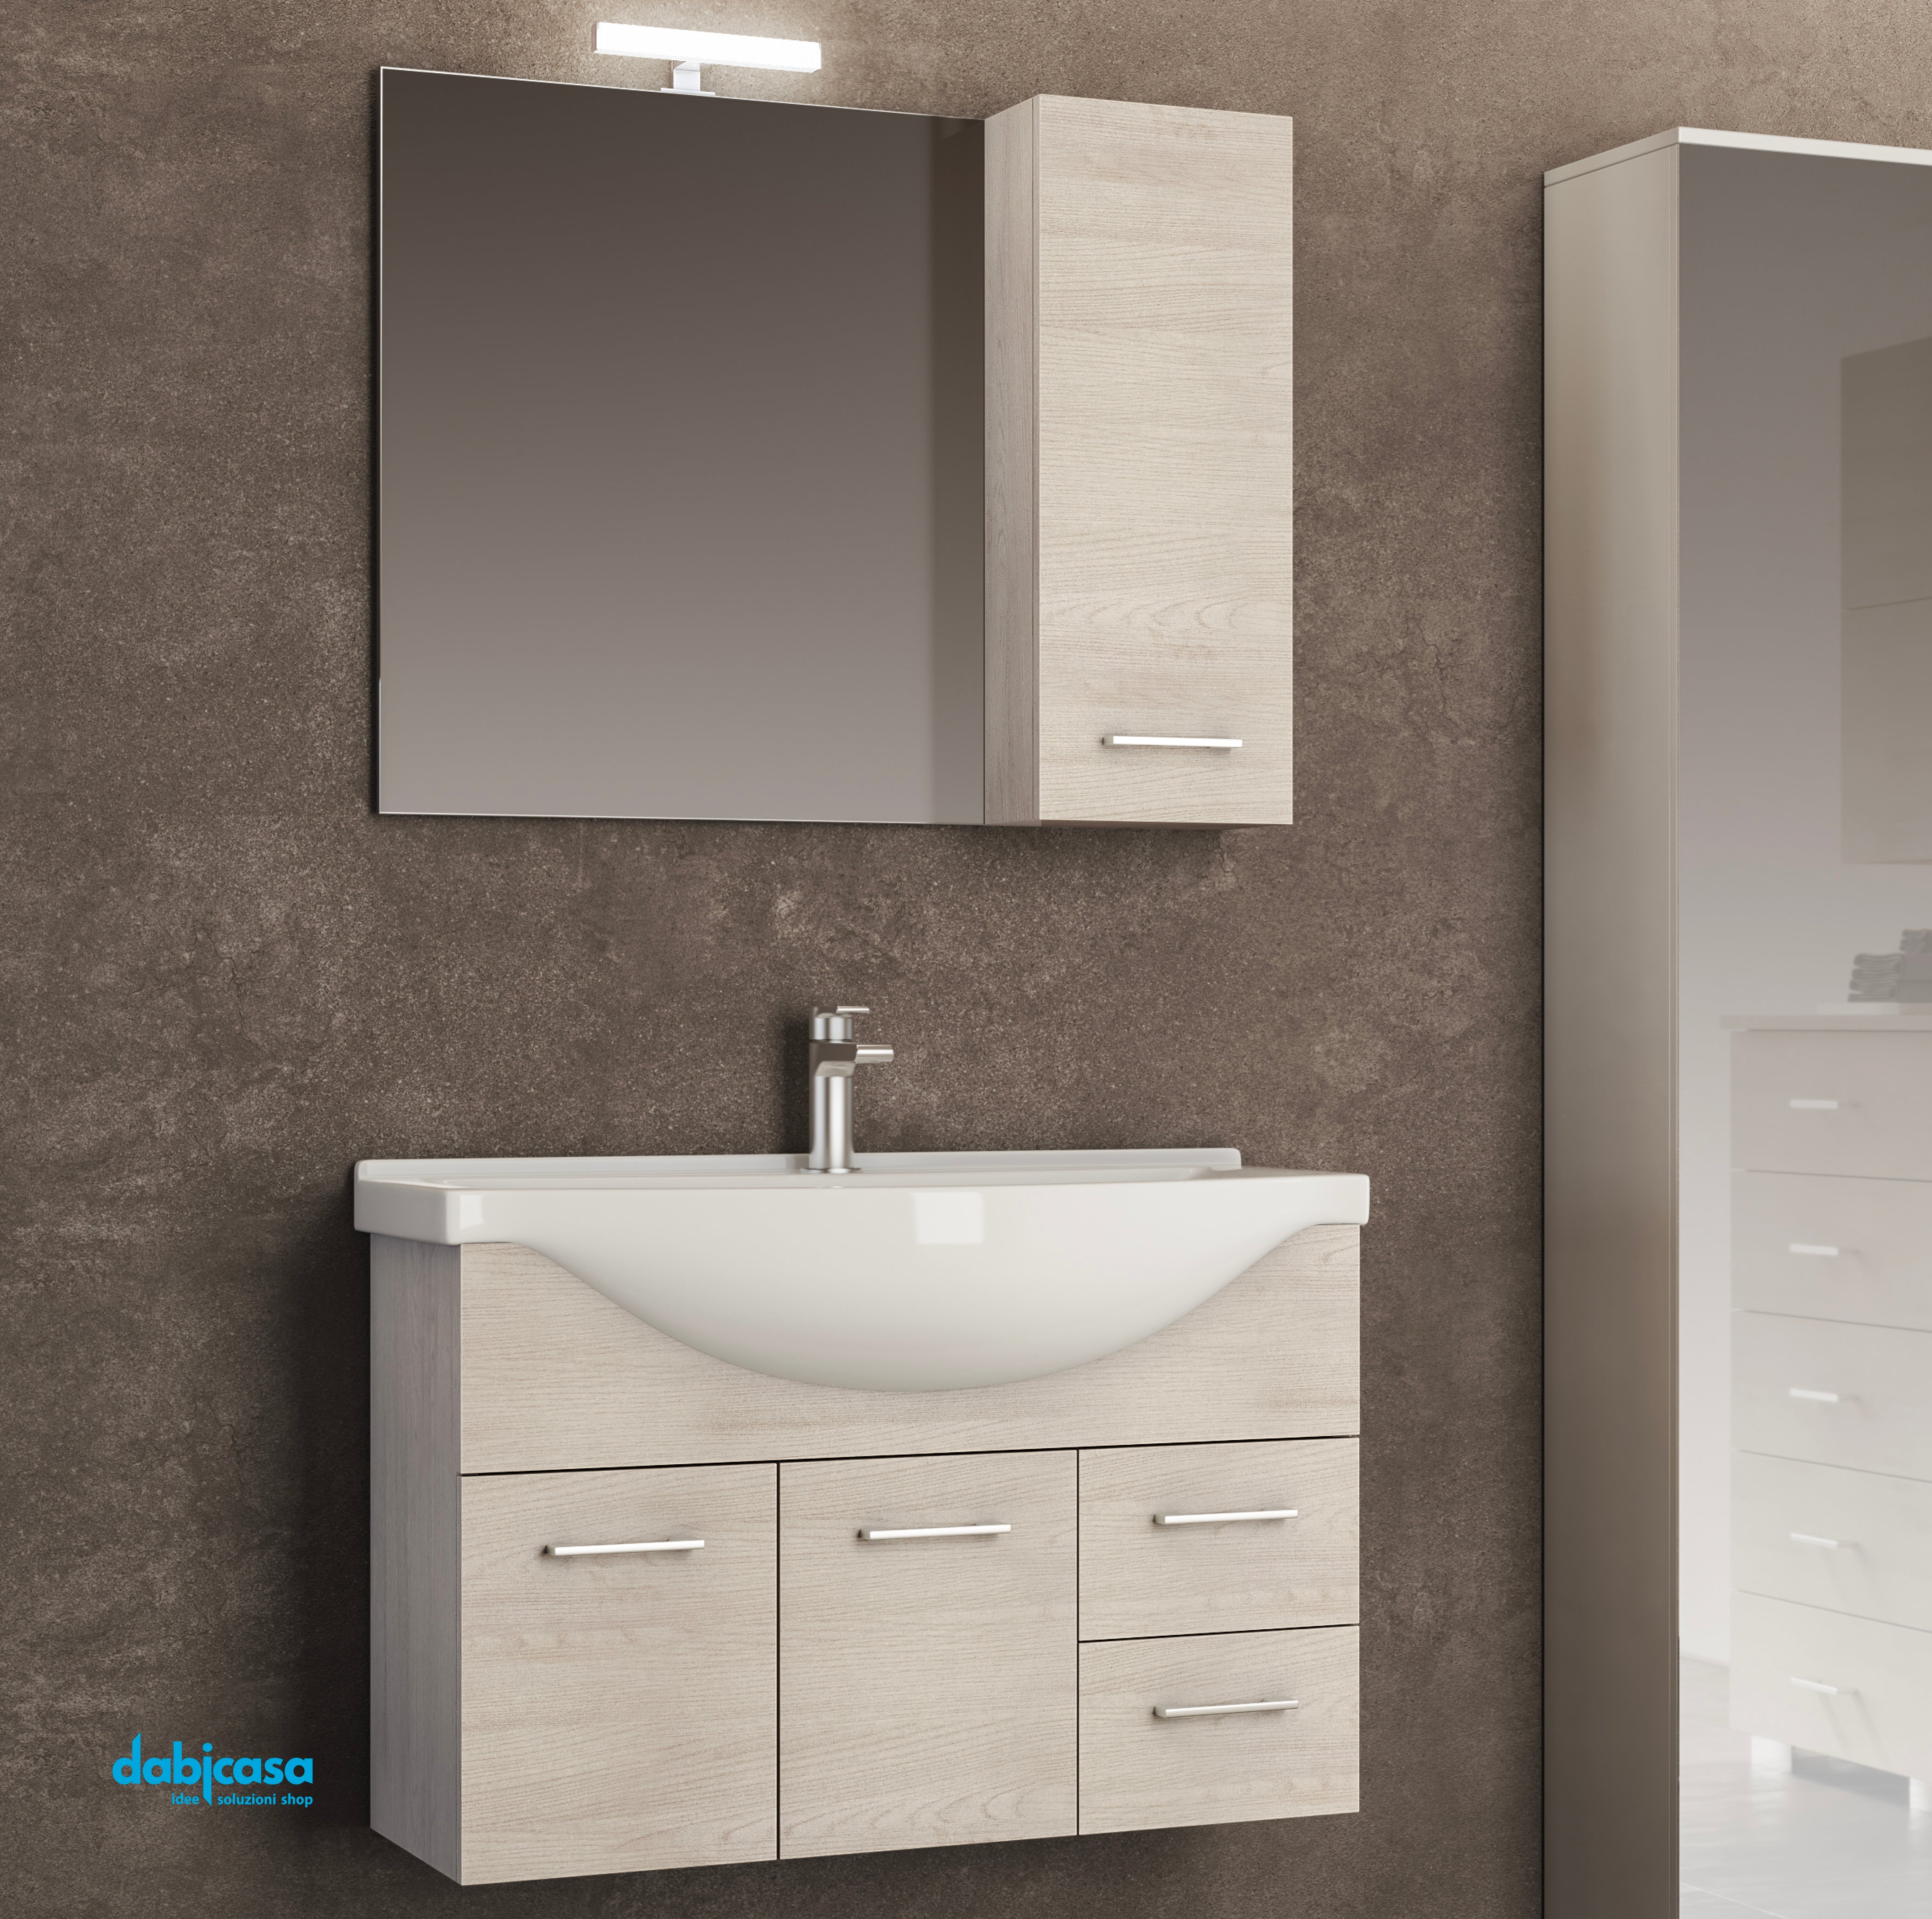 Mobile bagno sospeso 143 cm profondo 53,7 cm finitura effetto pietra con  lavabo e specchio led - Atelier